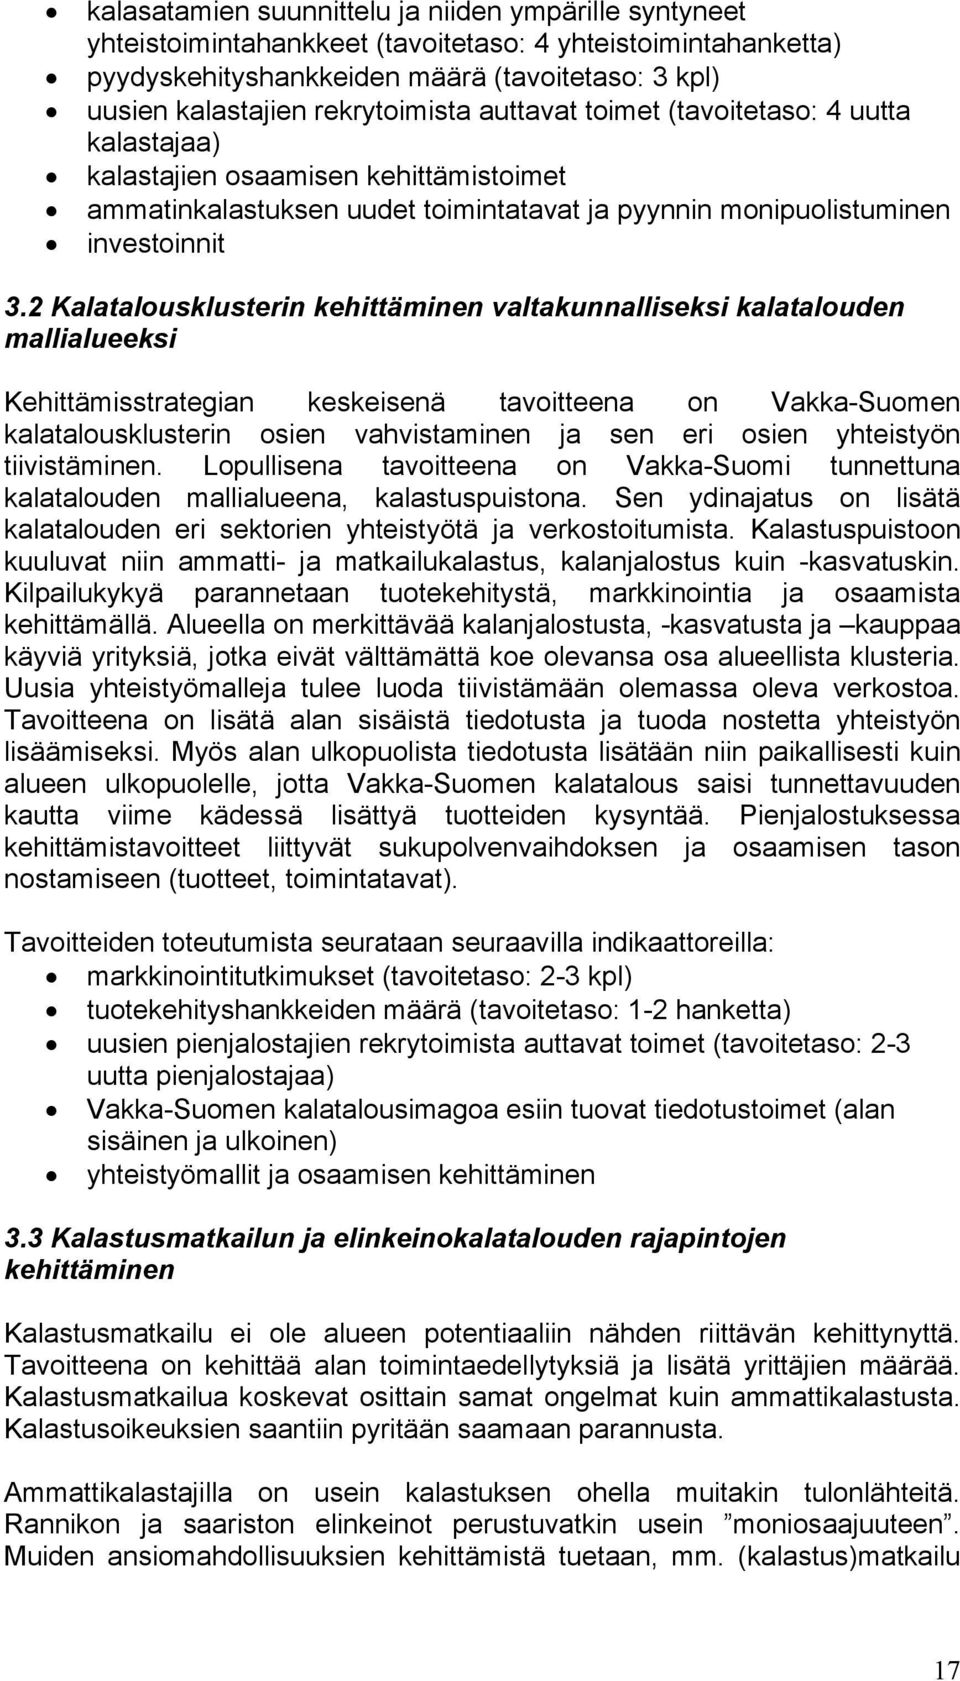 2 Kalatalousklusterin kehittäminen valtakunnalliseksi kalatalouden mallialueeksi Kehittämisstrategian keskeisenä tavoitteena on Vakka-Suomen kalatalousklusterin osien vahvistaminen ja sen eri osien